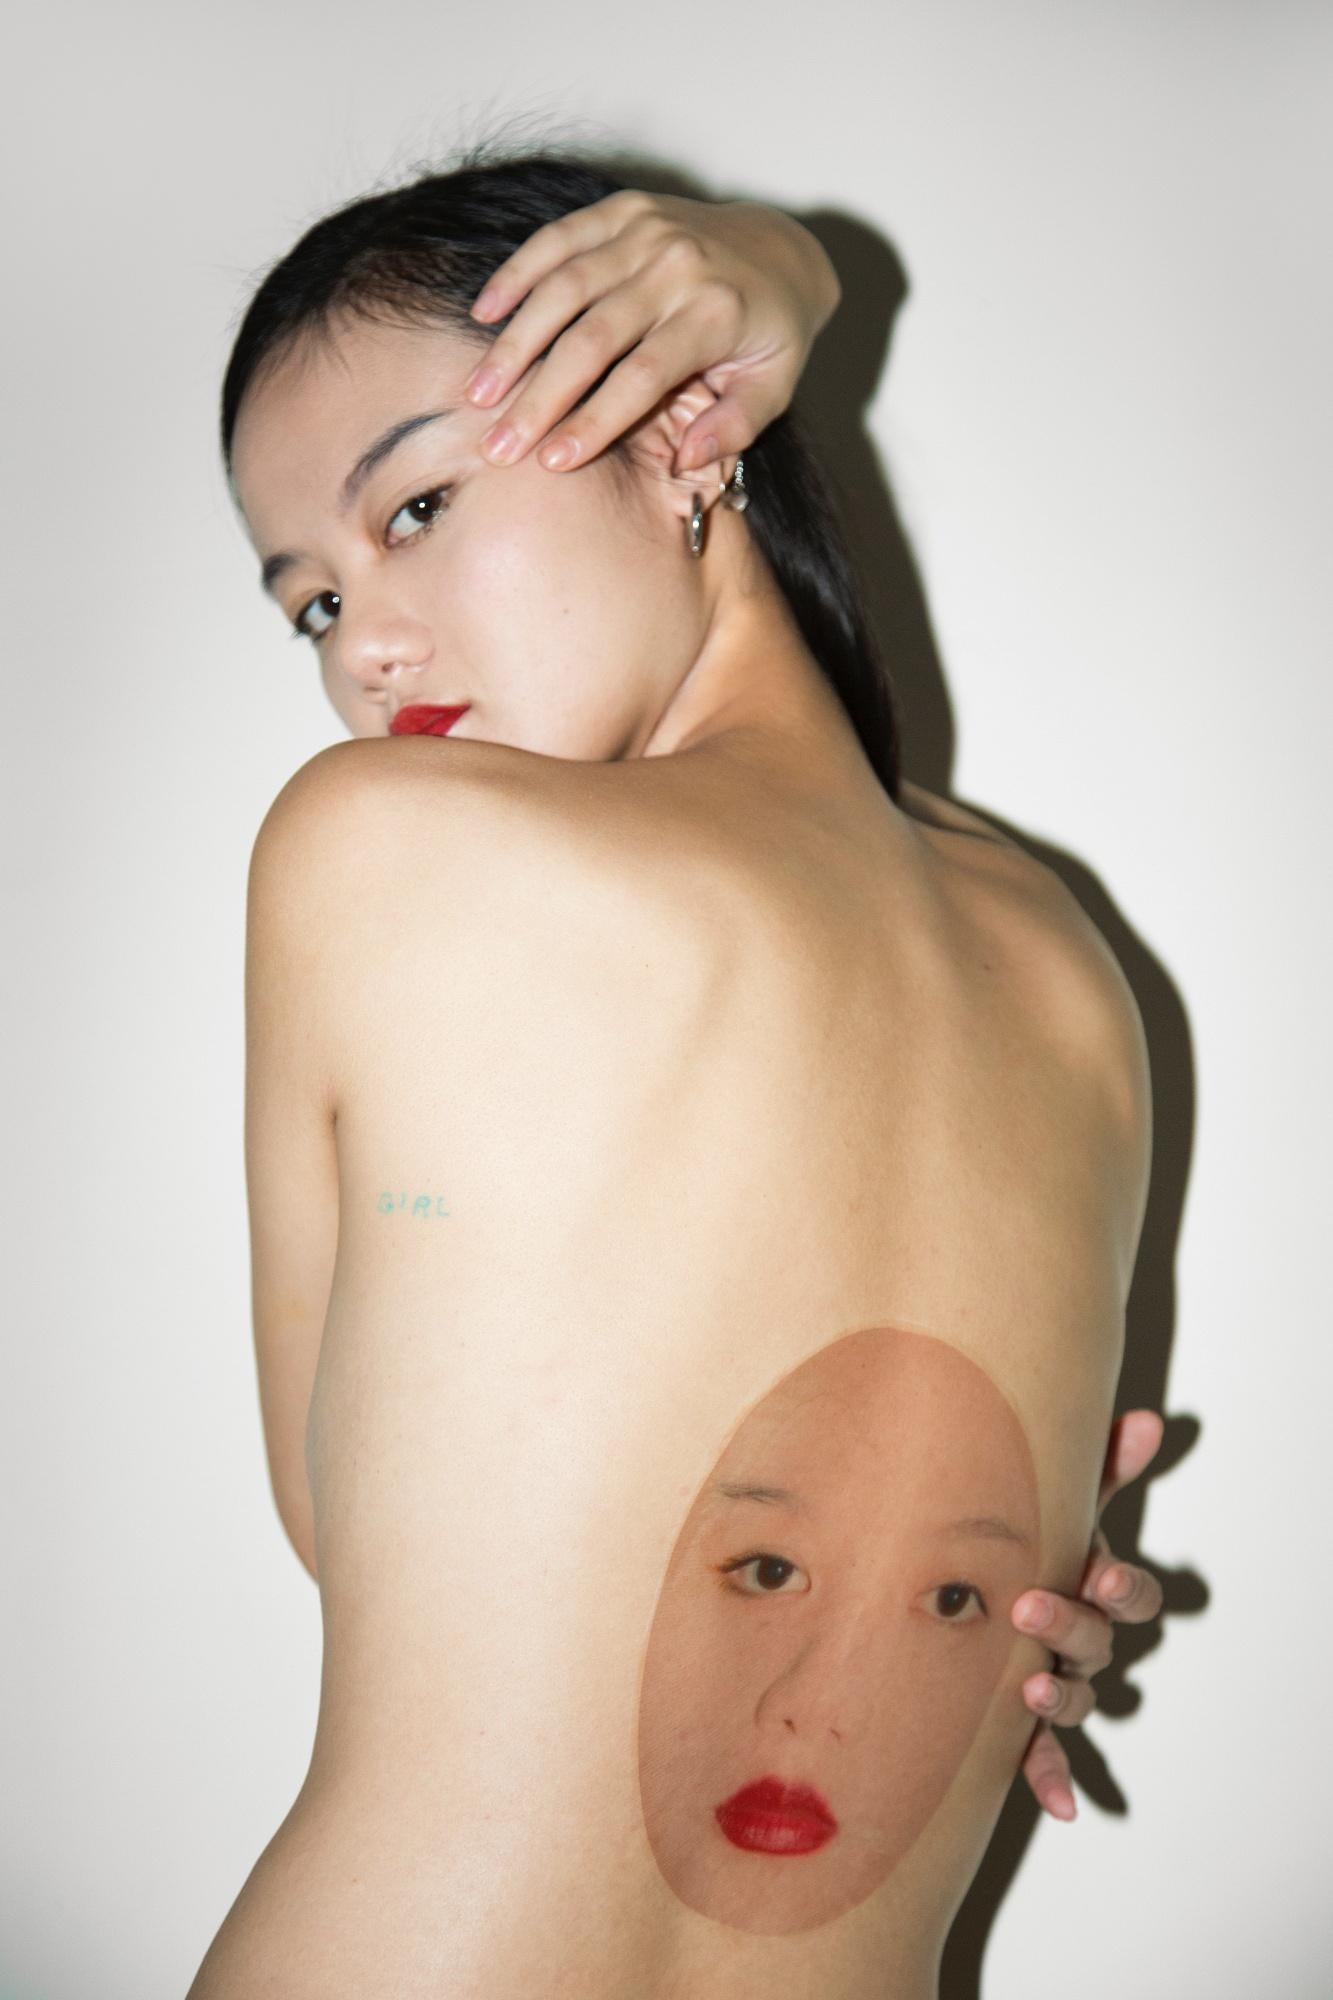 JOHN Yuyi (*1991, Taiwan)
Das Gesicht 2, 2016
Archivalischer Pigmentdruck
Blatt 90 x 60 cm (36 x 24 in.)
Auflage von 6, plus 2 AP; Ed. Nr. 1/6

John Yuyi (*1991, Taiwan) ist weltweit als interdisziplinäre Stimme ihrer Generation in Kunst, Mode und